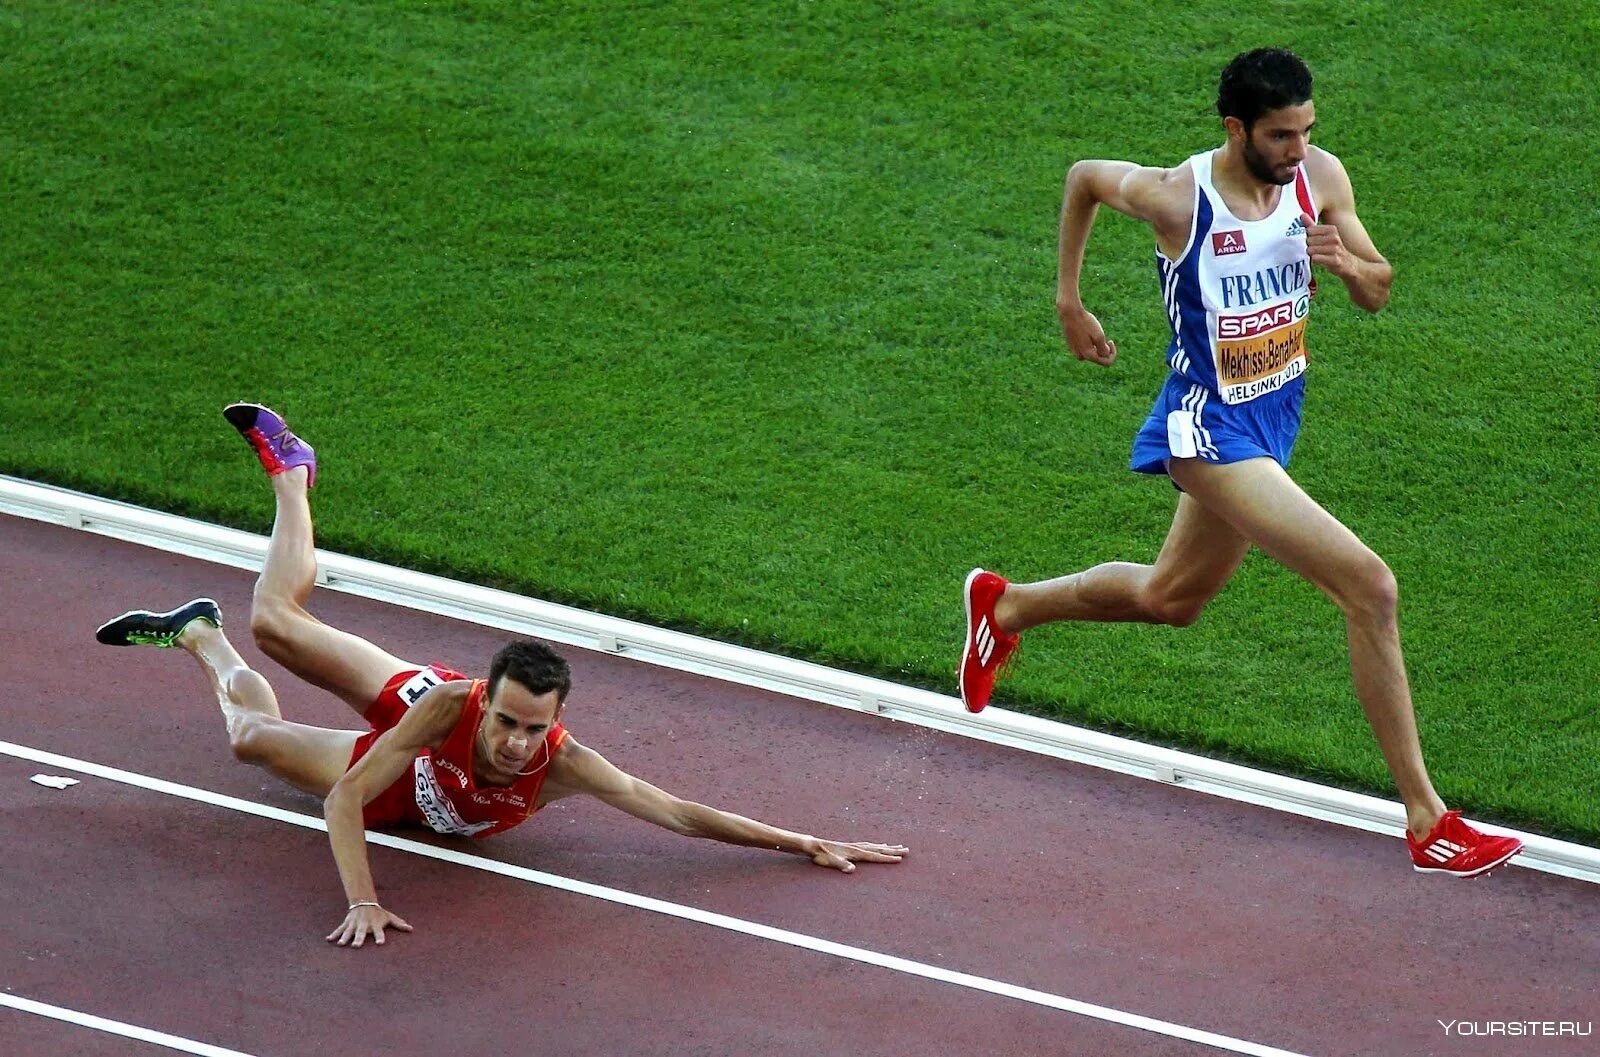 Тяжелый бегун. Спортсмены. Человек бежит к финишу. Спортсмен падает. Спортсмен перед финишем.